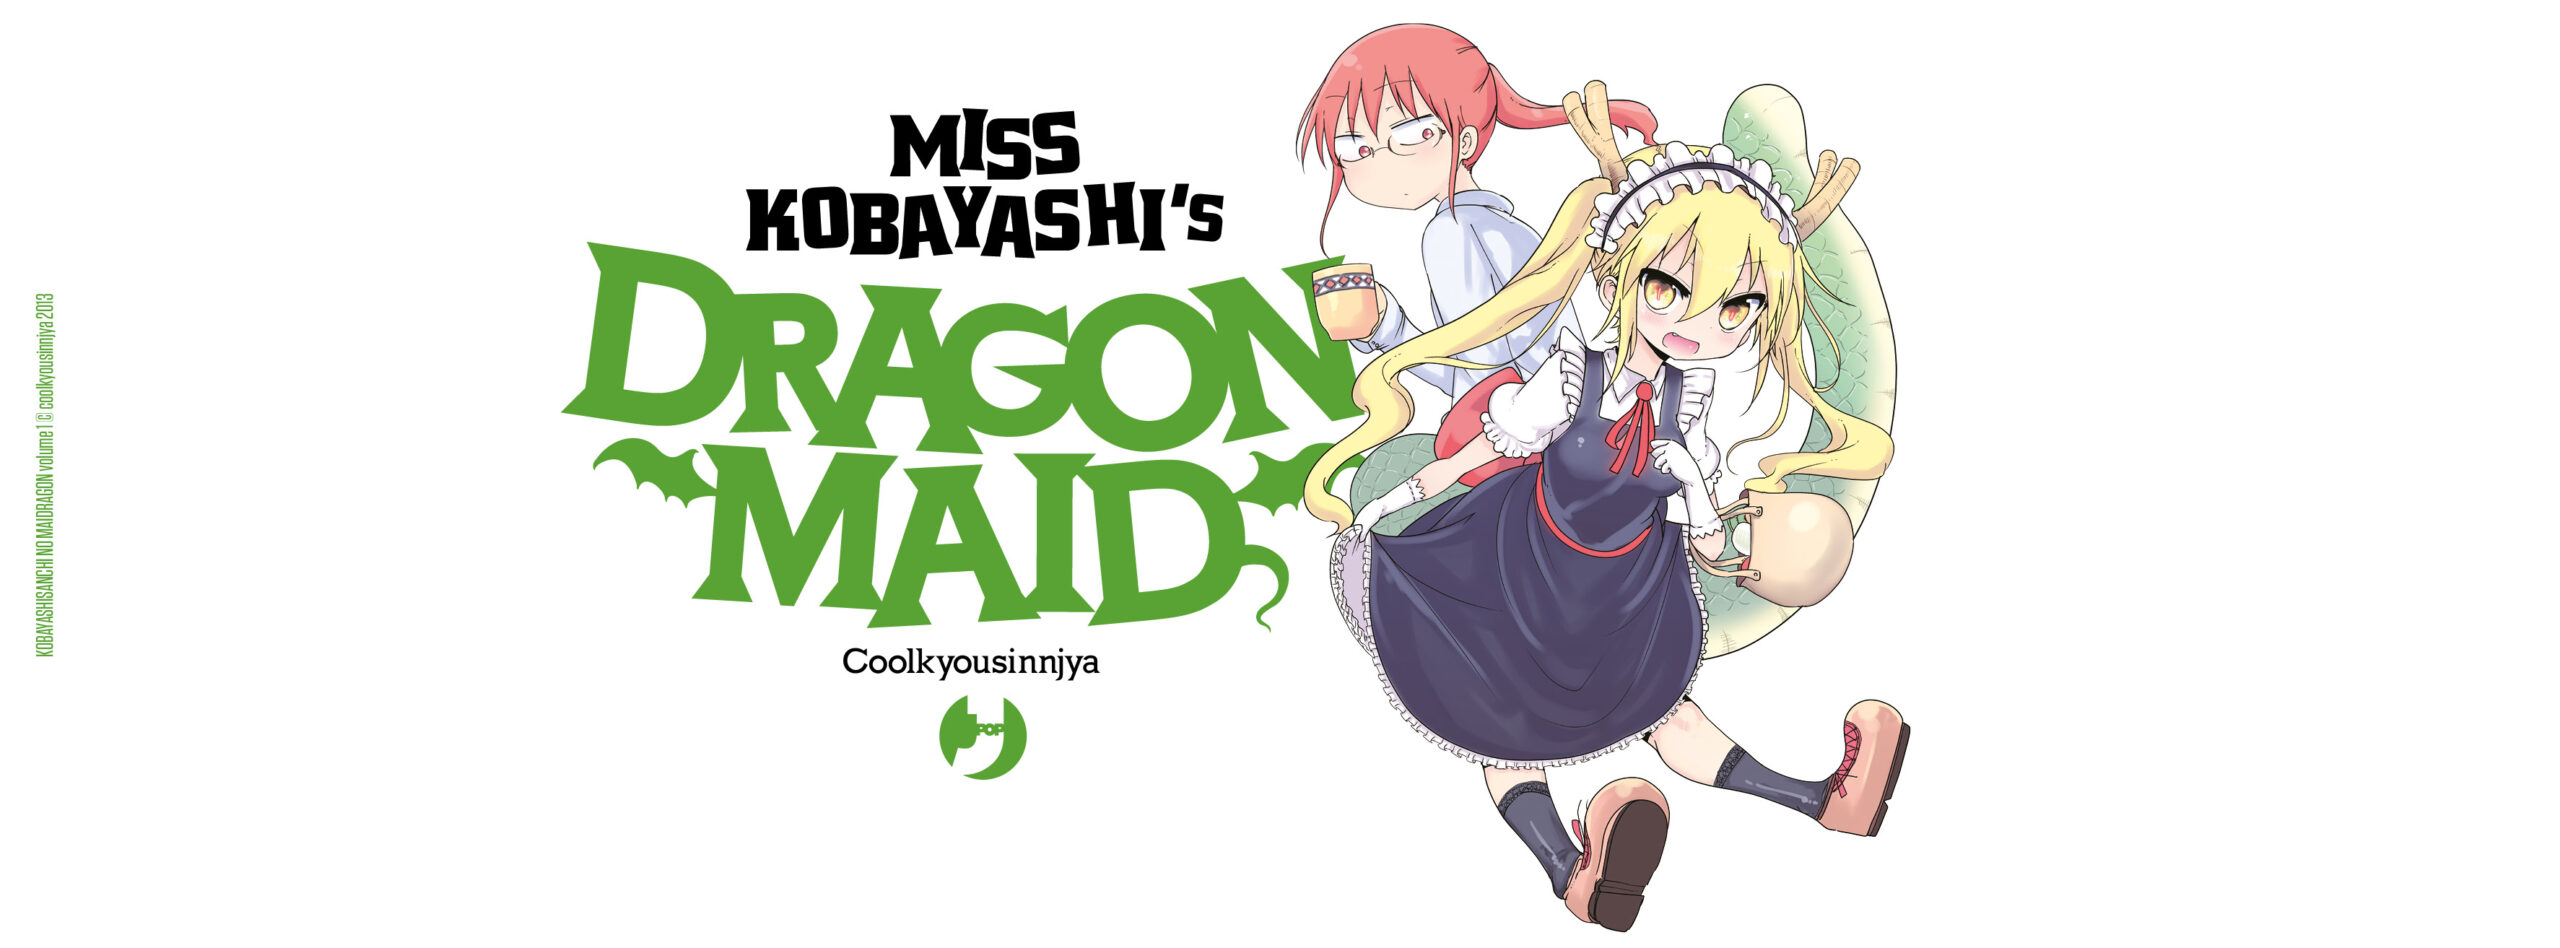 Miss Kobayashi's Dragon Maid è in arrivo per J-POP Manga